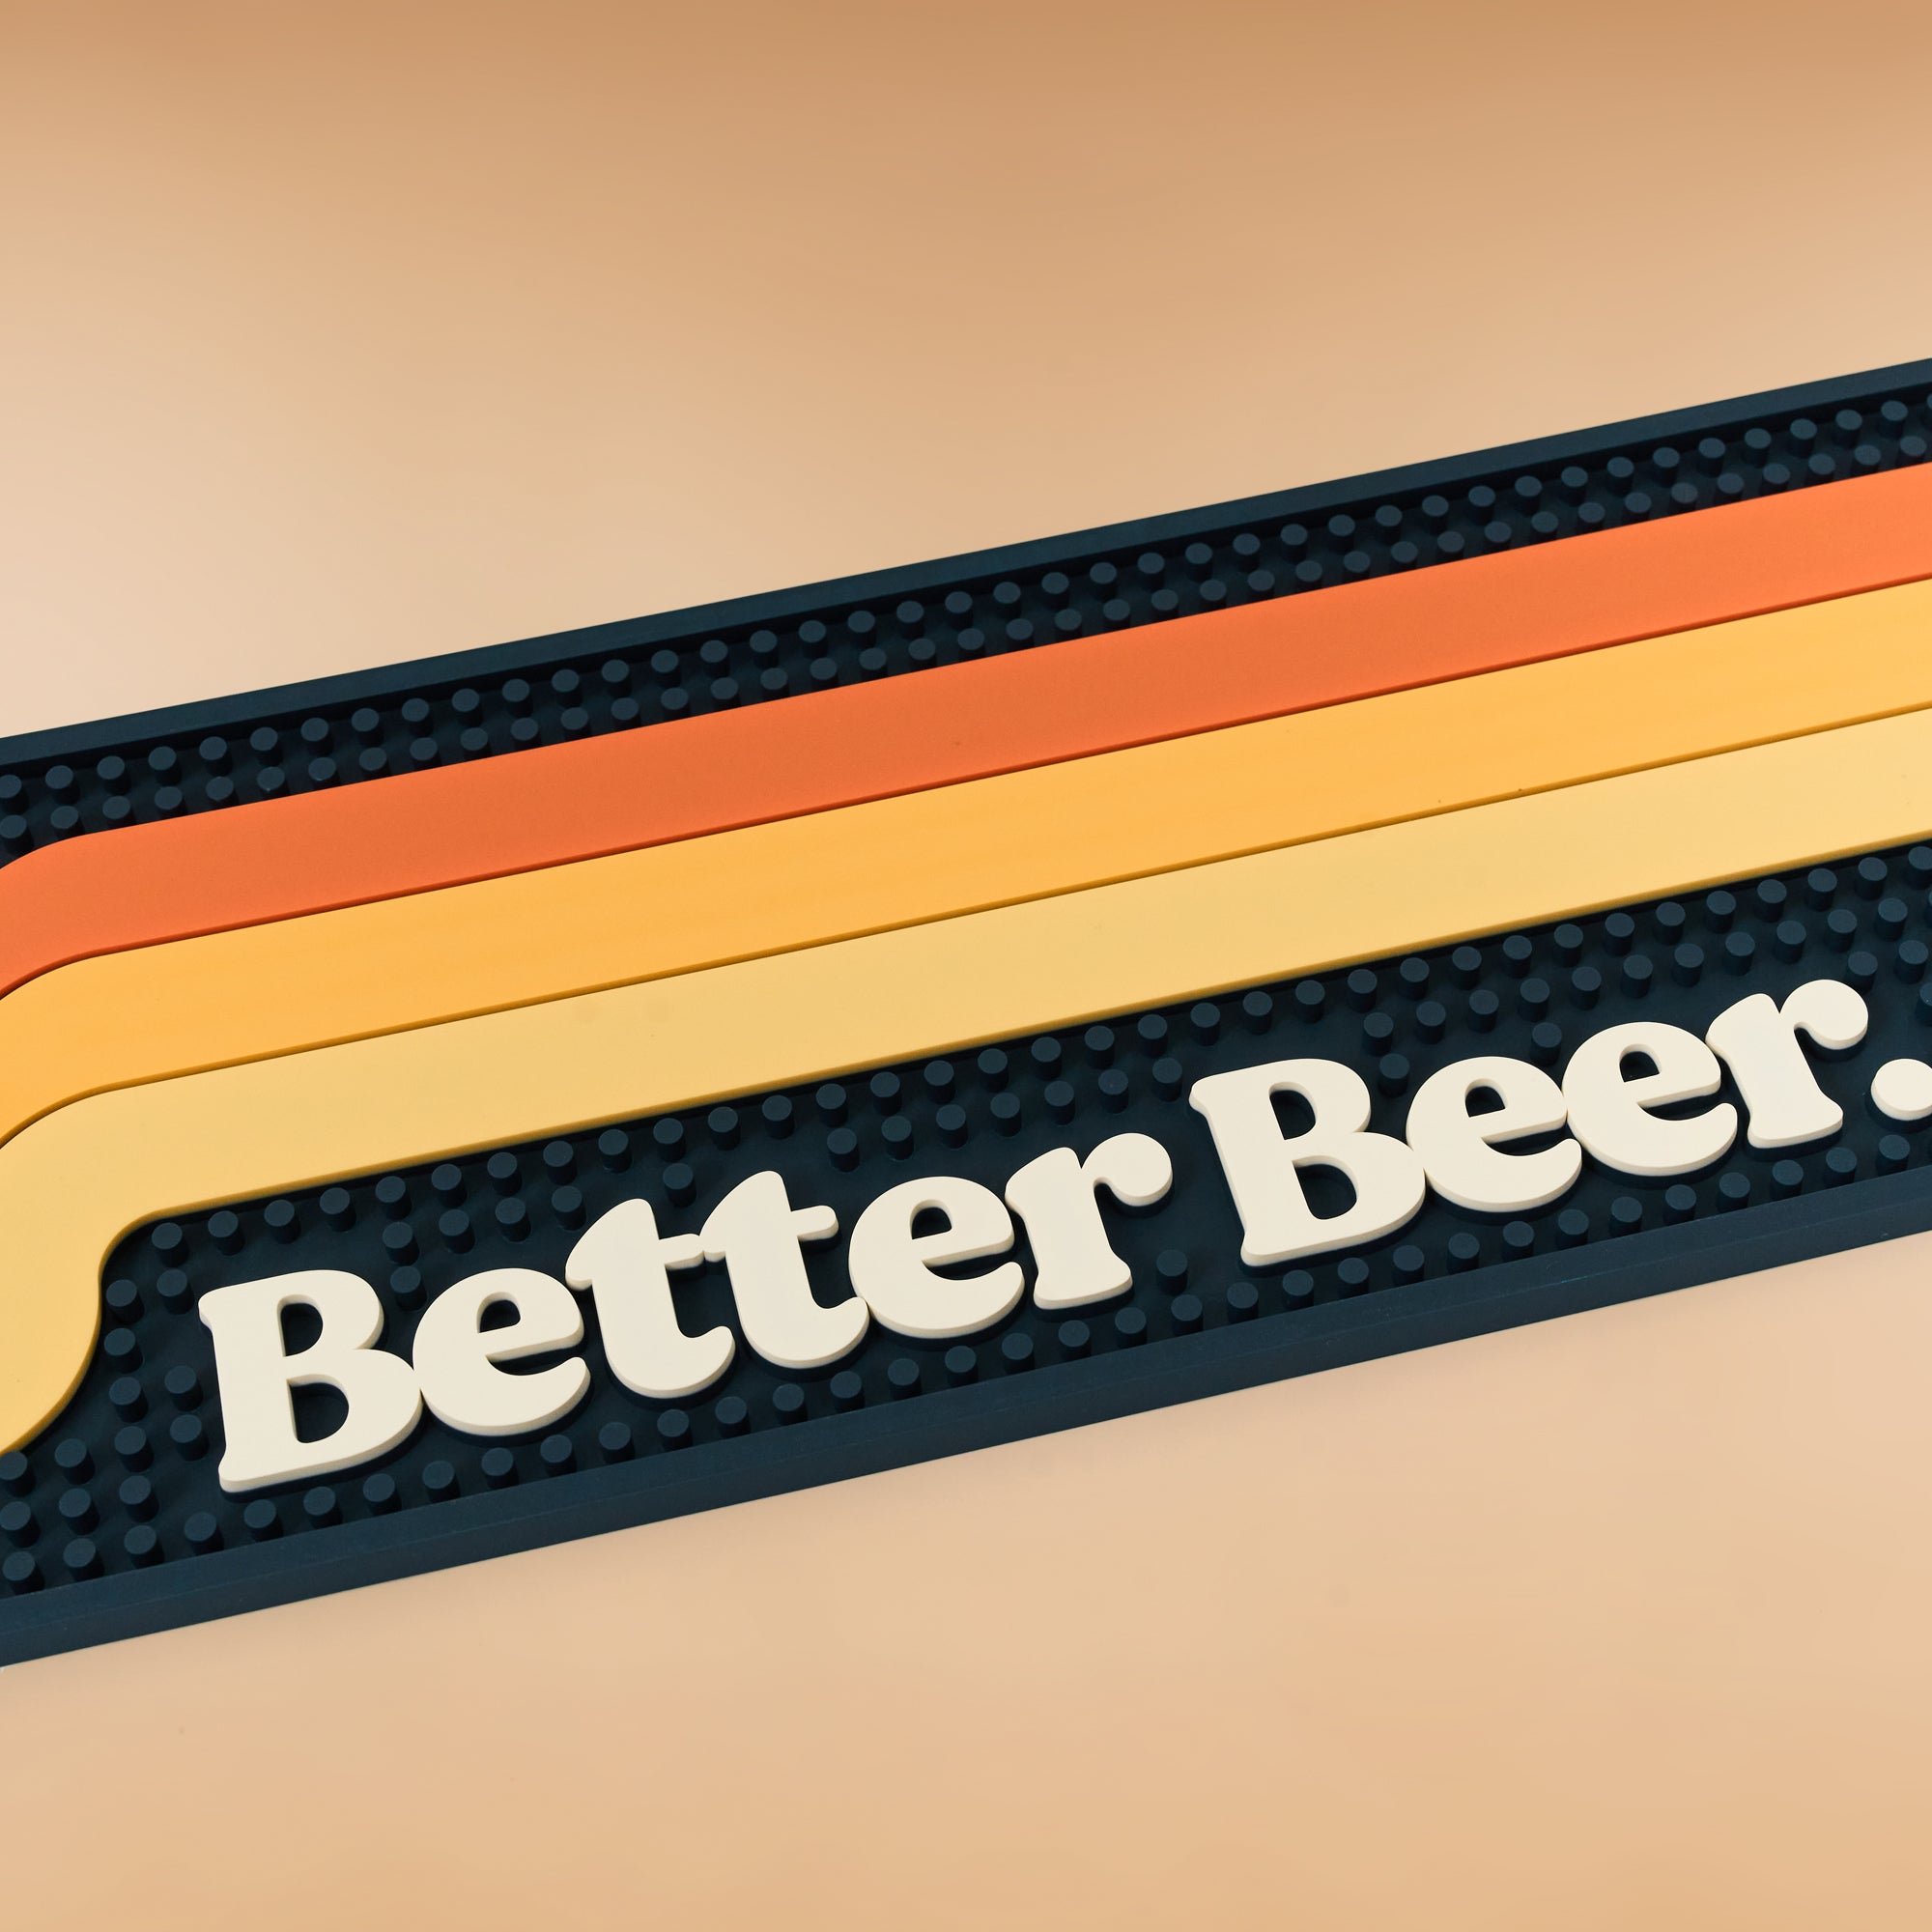 The All New Better Beer Rubber Bar Mat